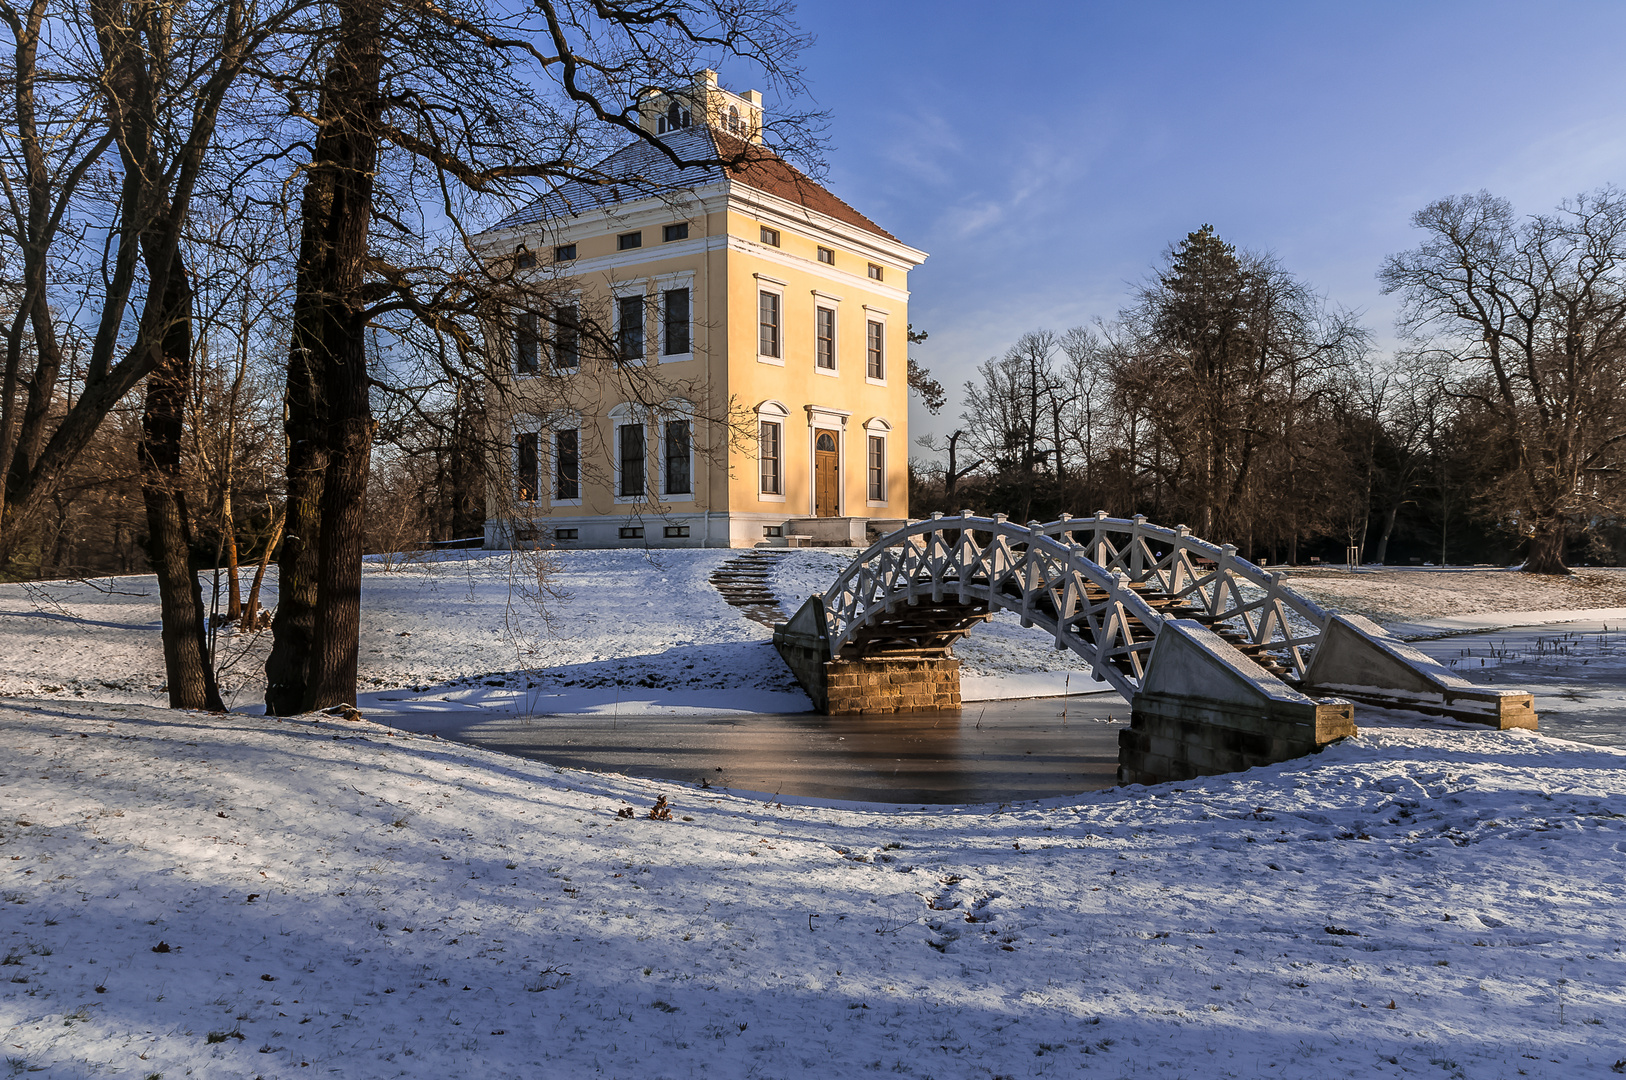 Schloss Luisium in Dessau im Winter